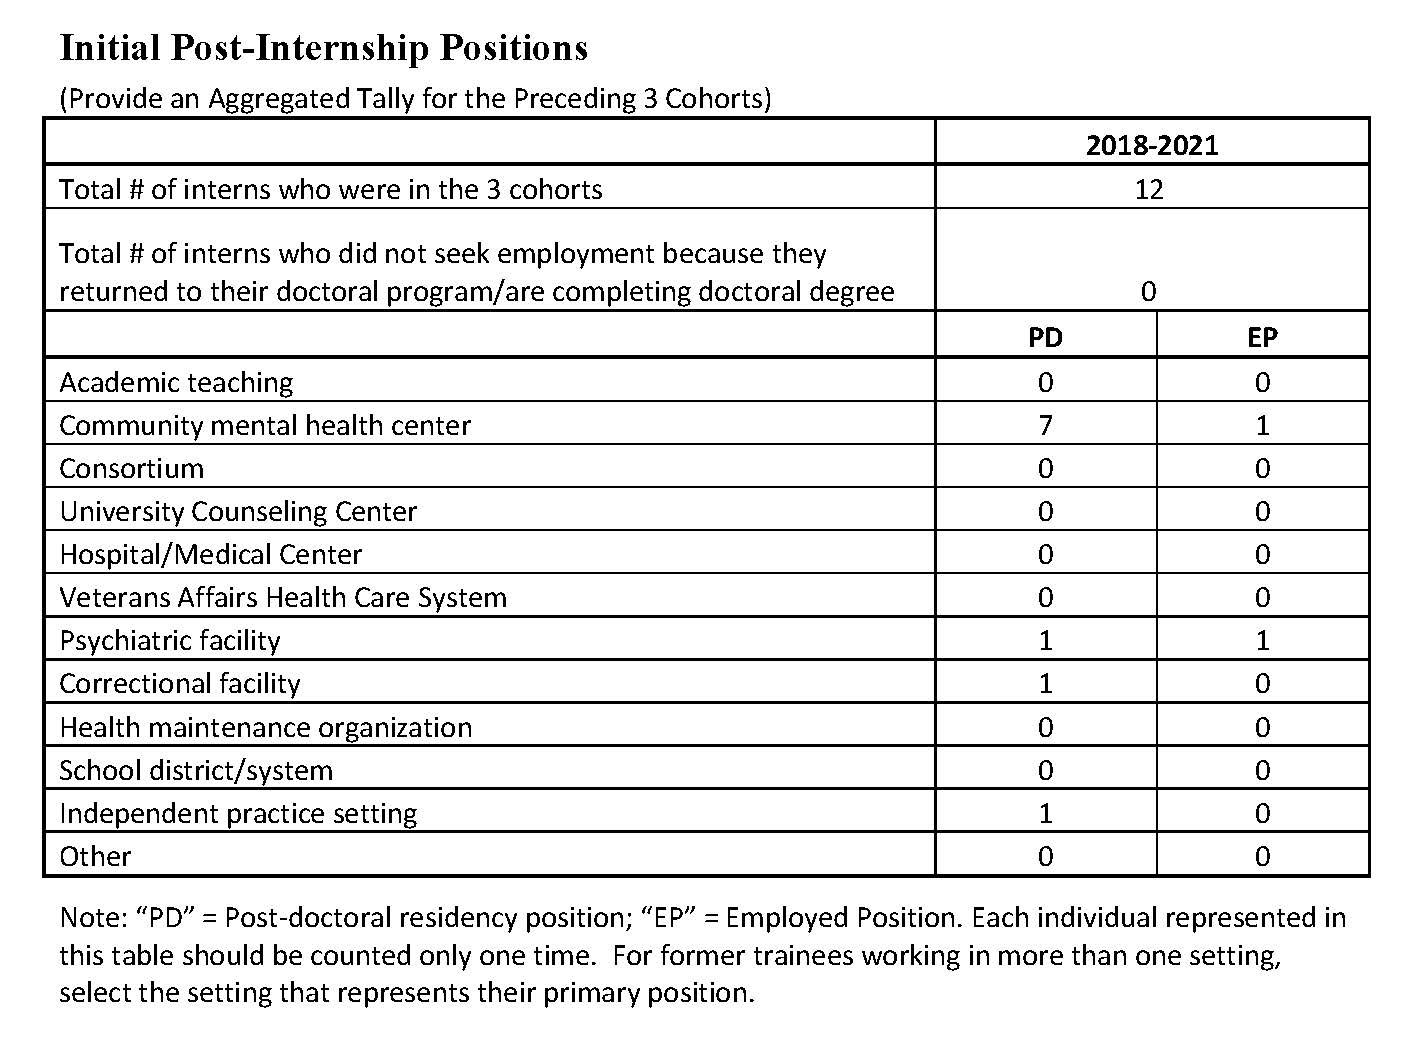 2021-initial-post-internship-positions.jpg